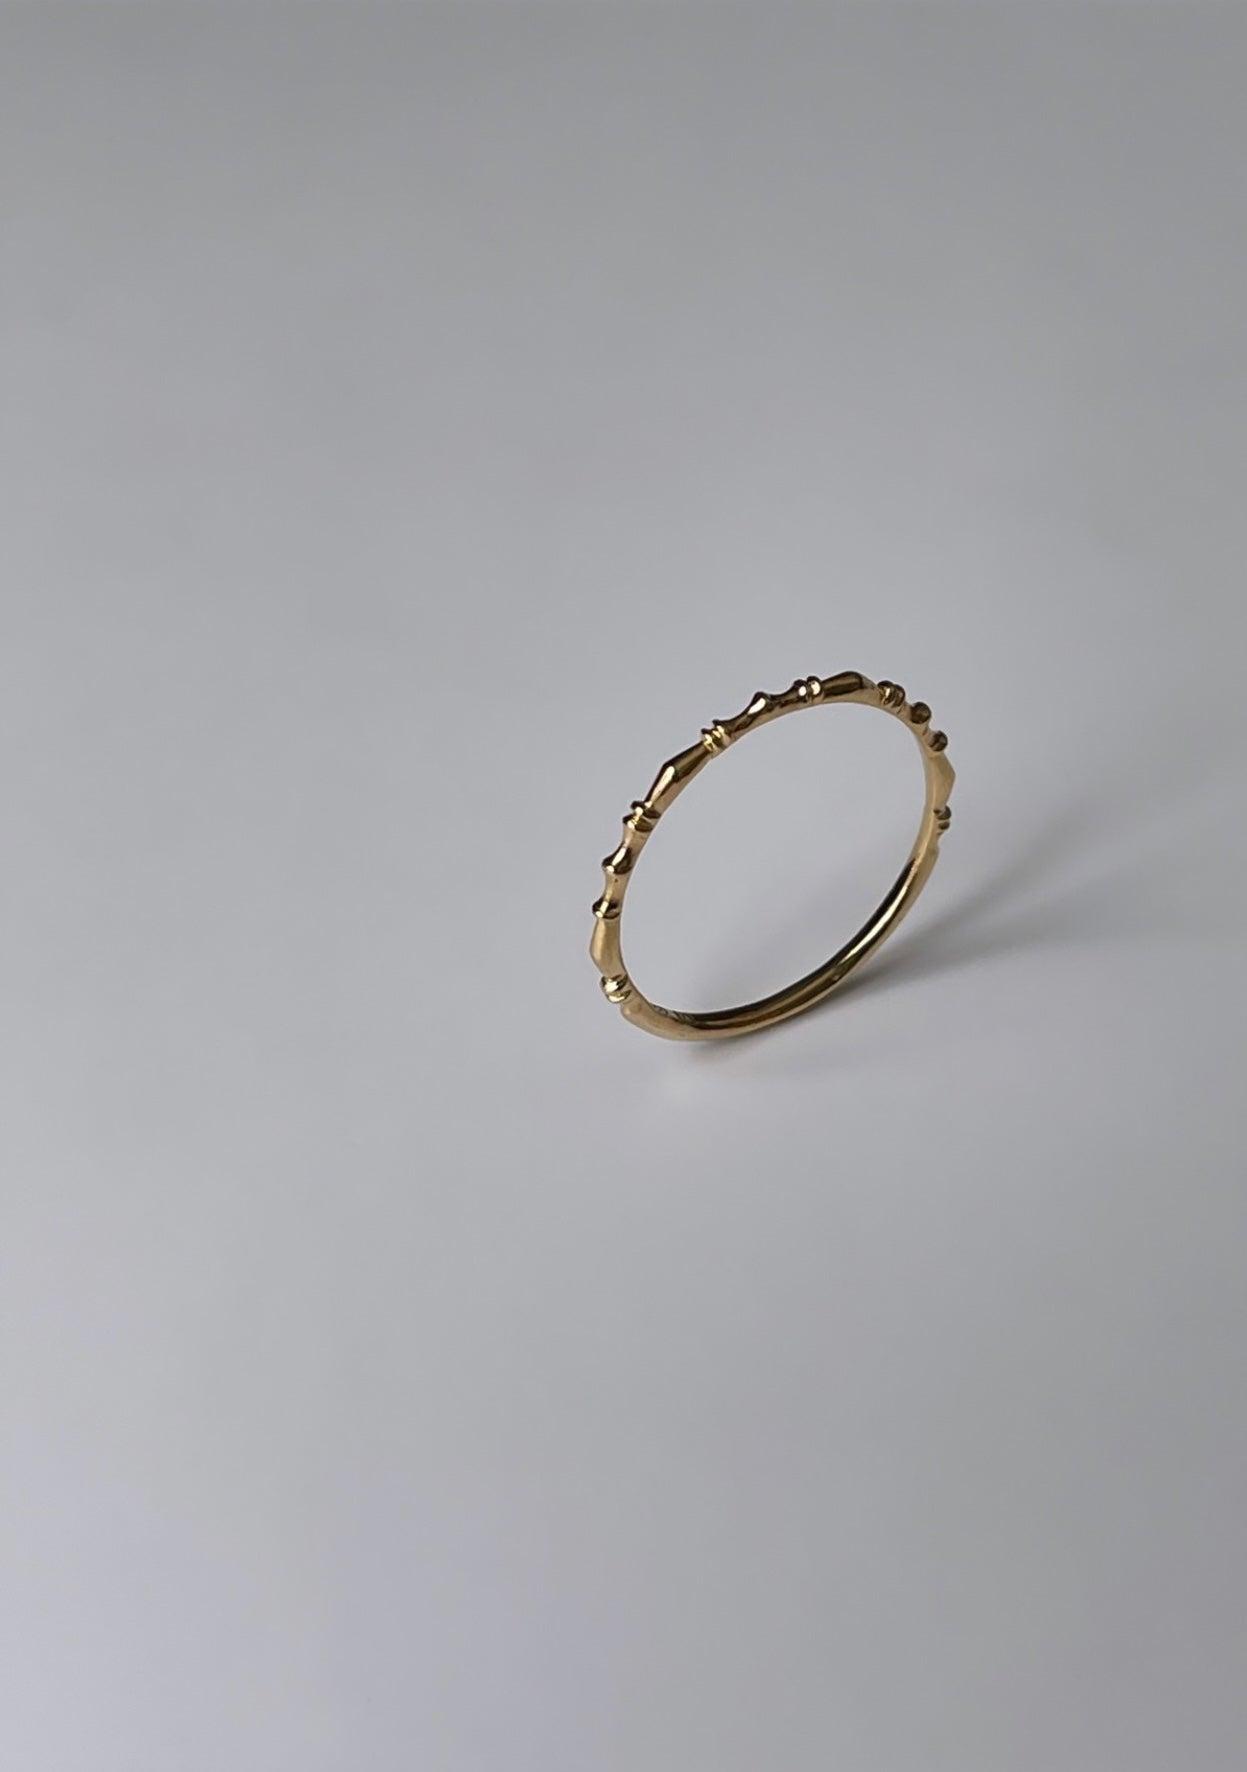 Baluster ring